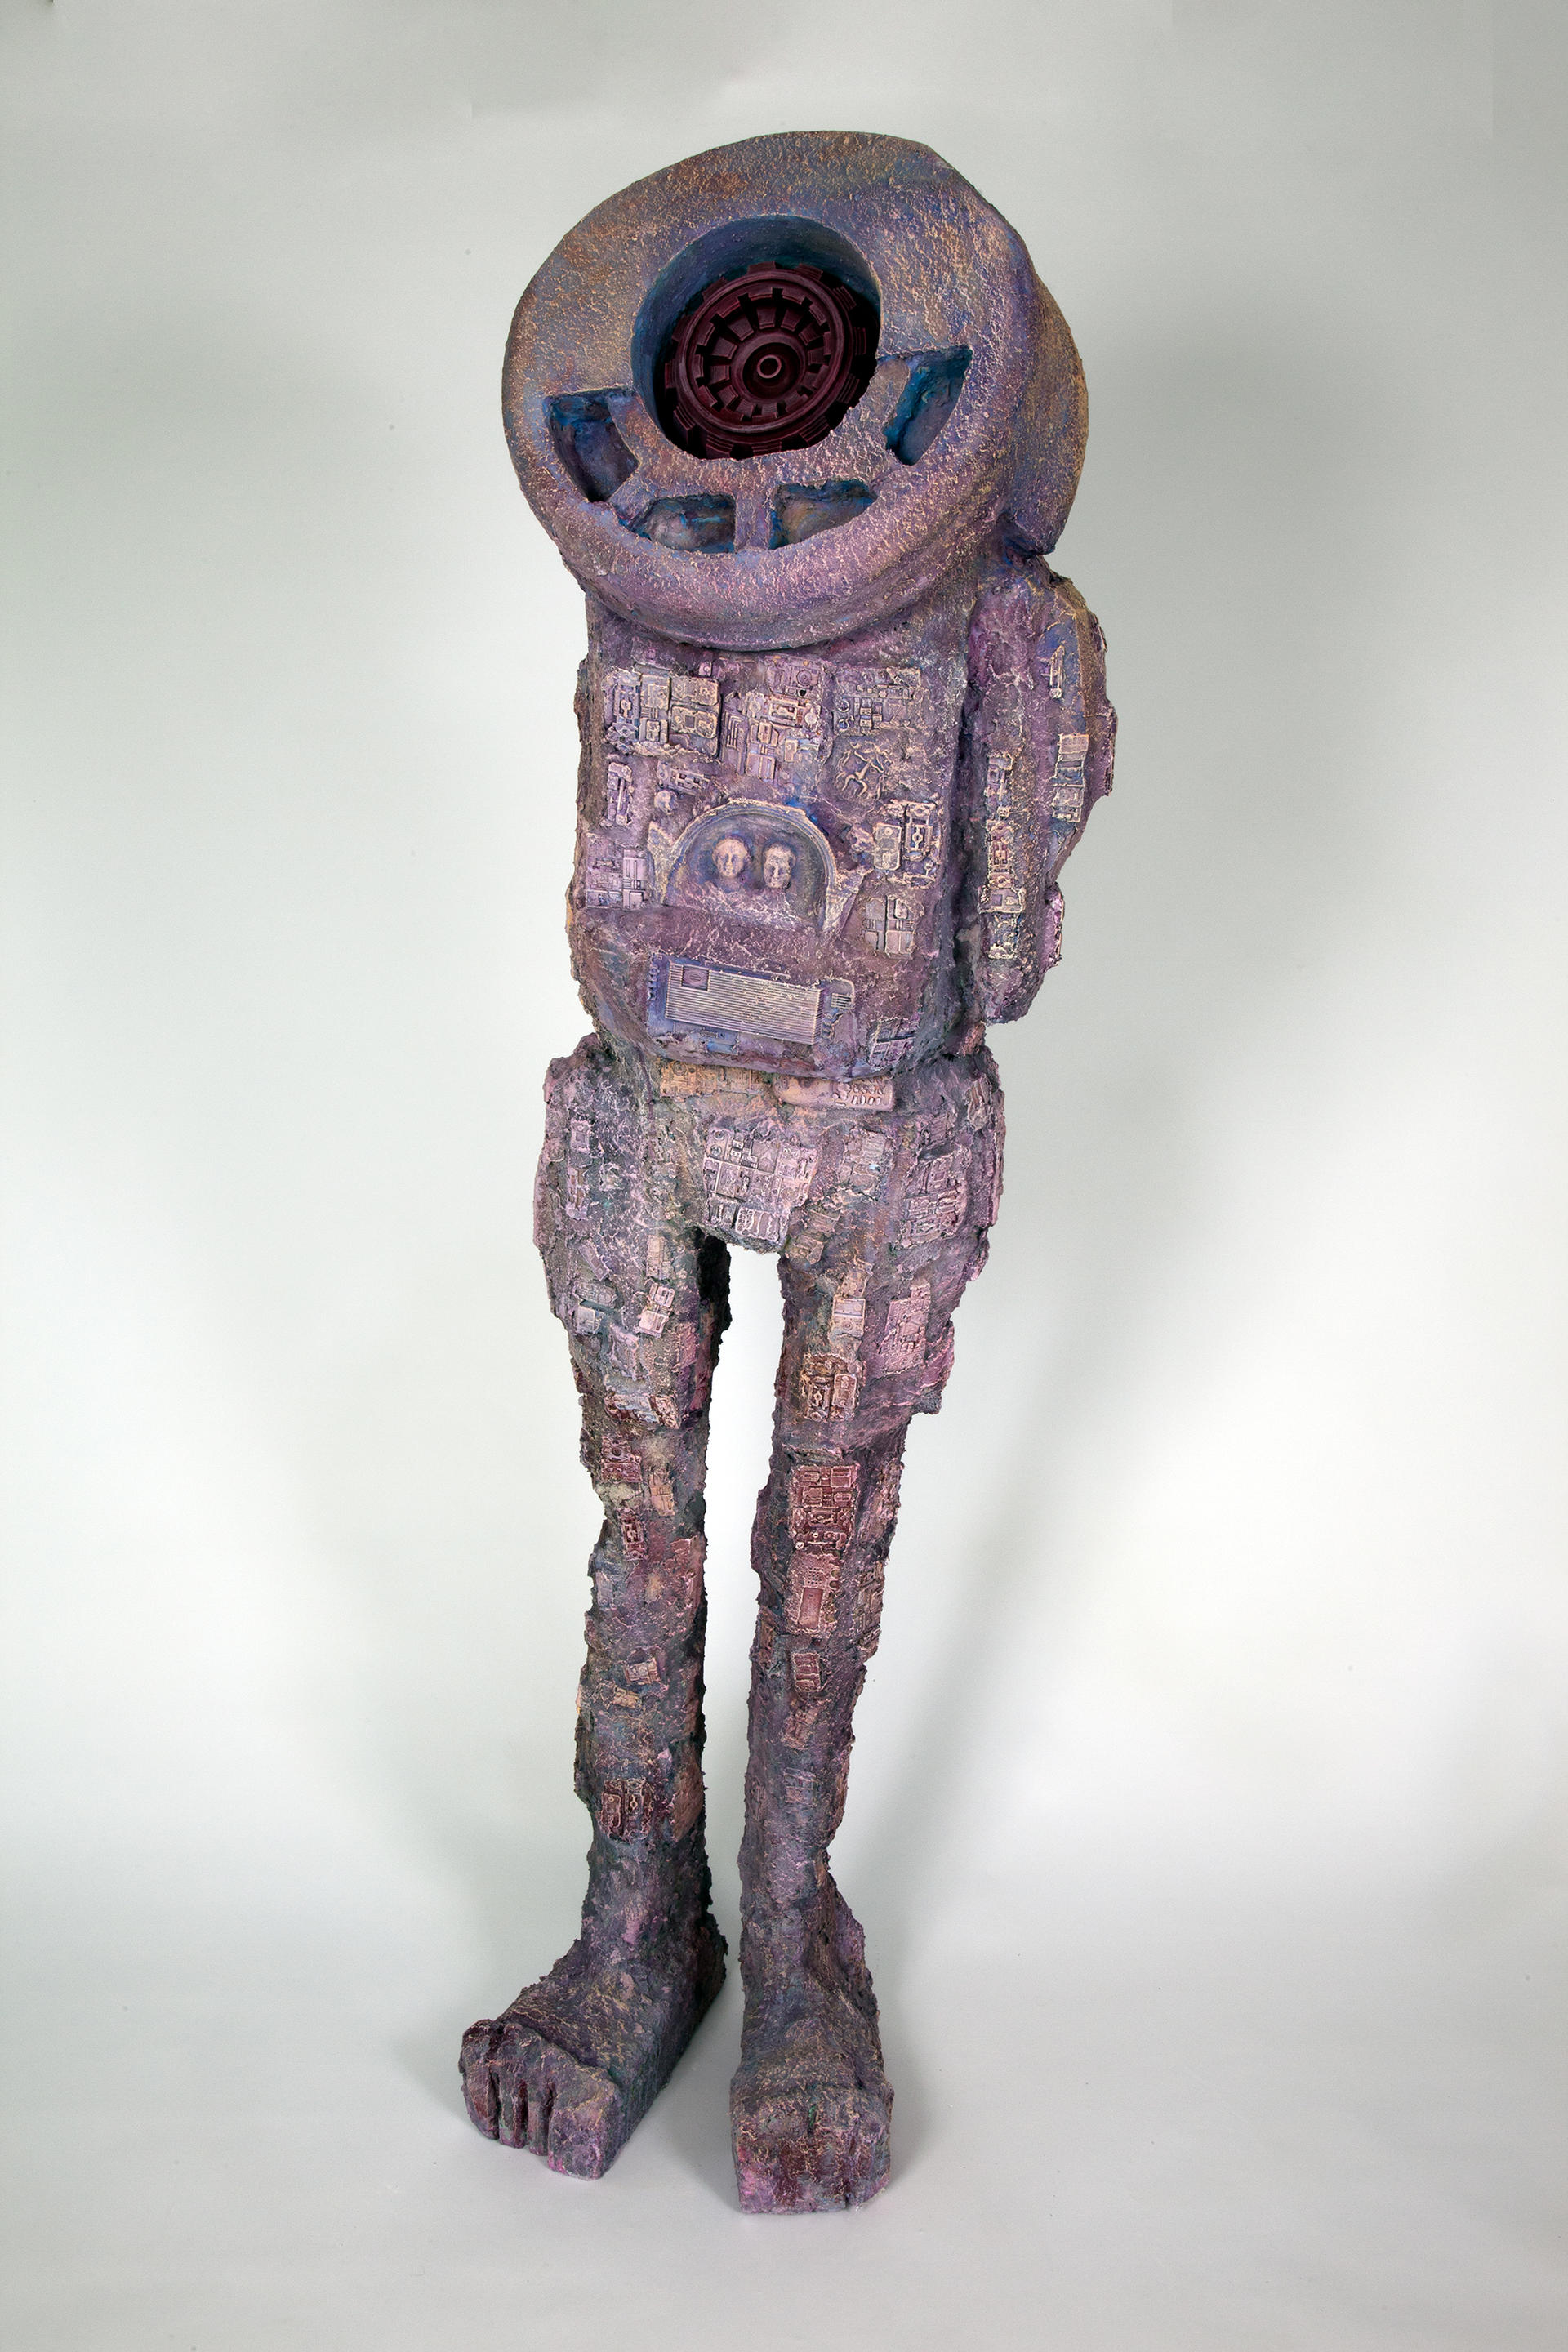 Image of a purple robotic figure